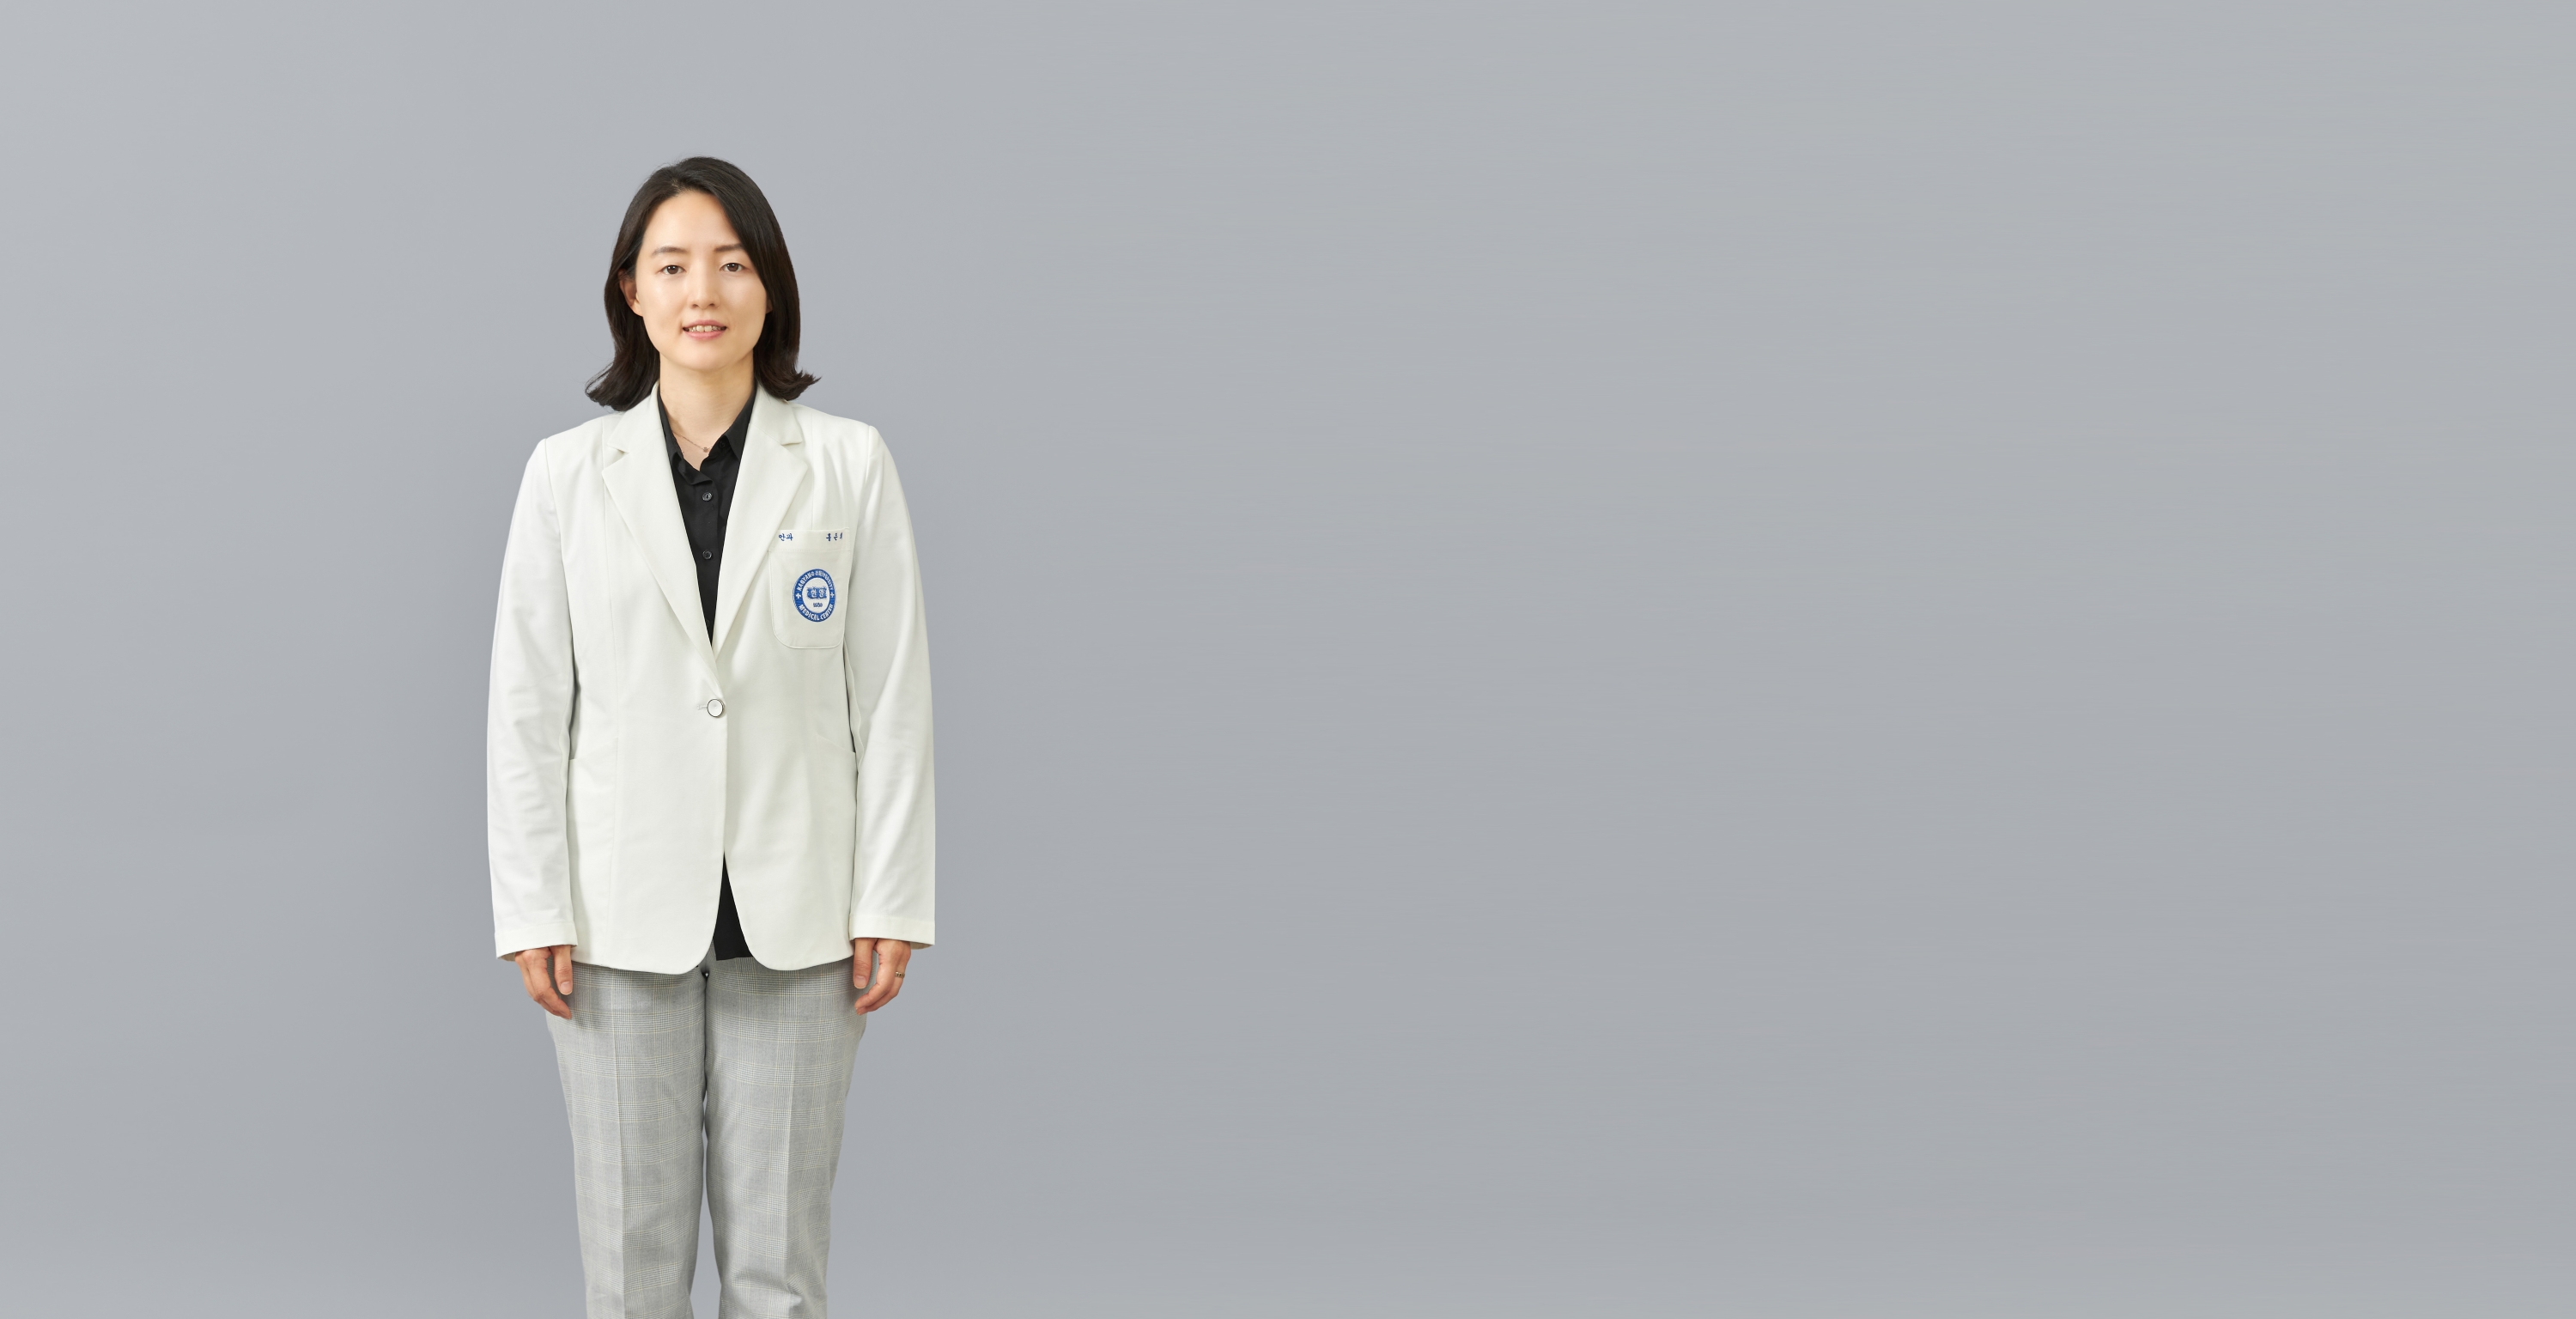 Ophthalmology - Hong, Eun Hee 